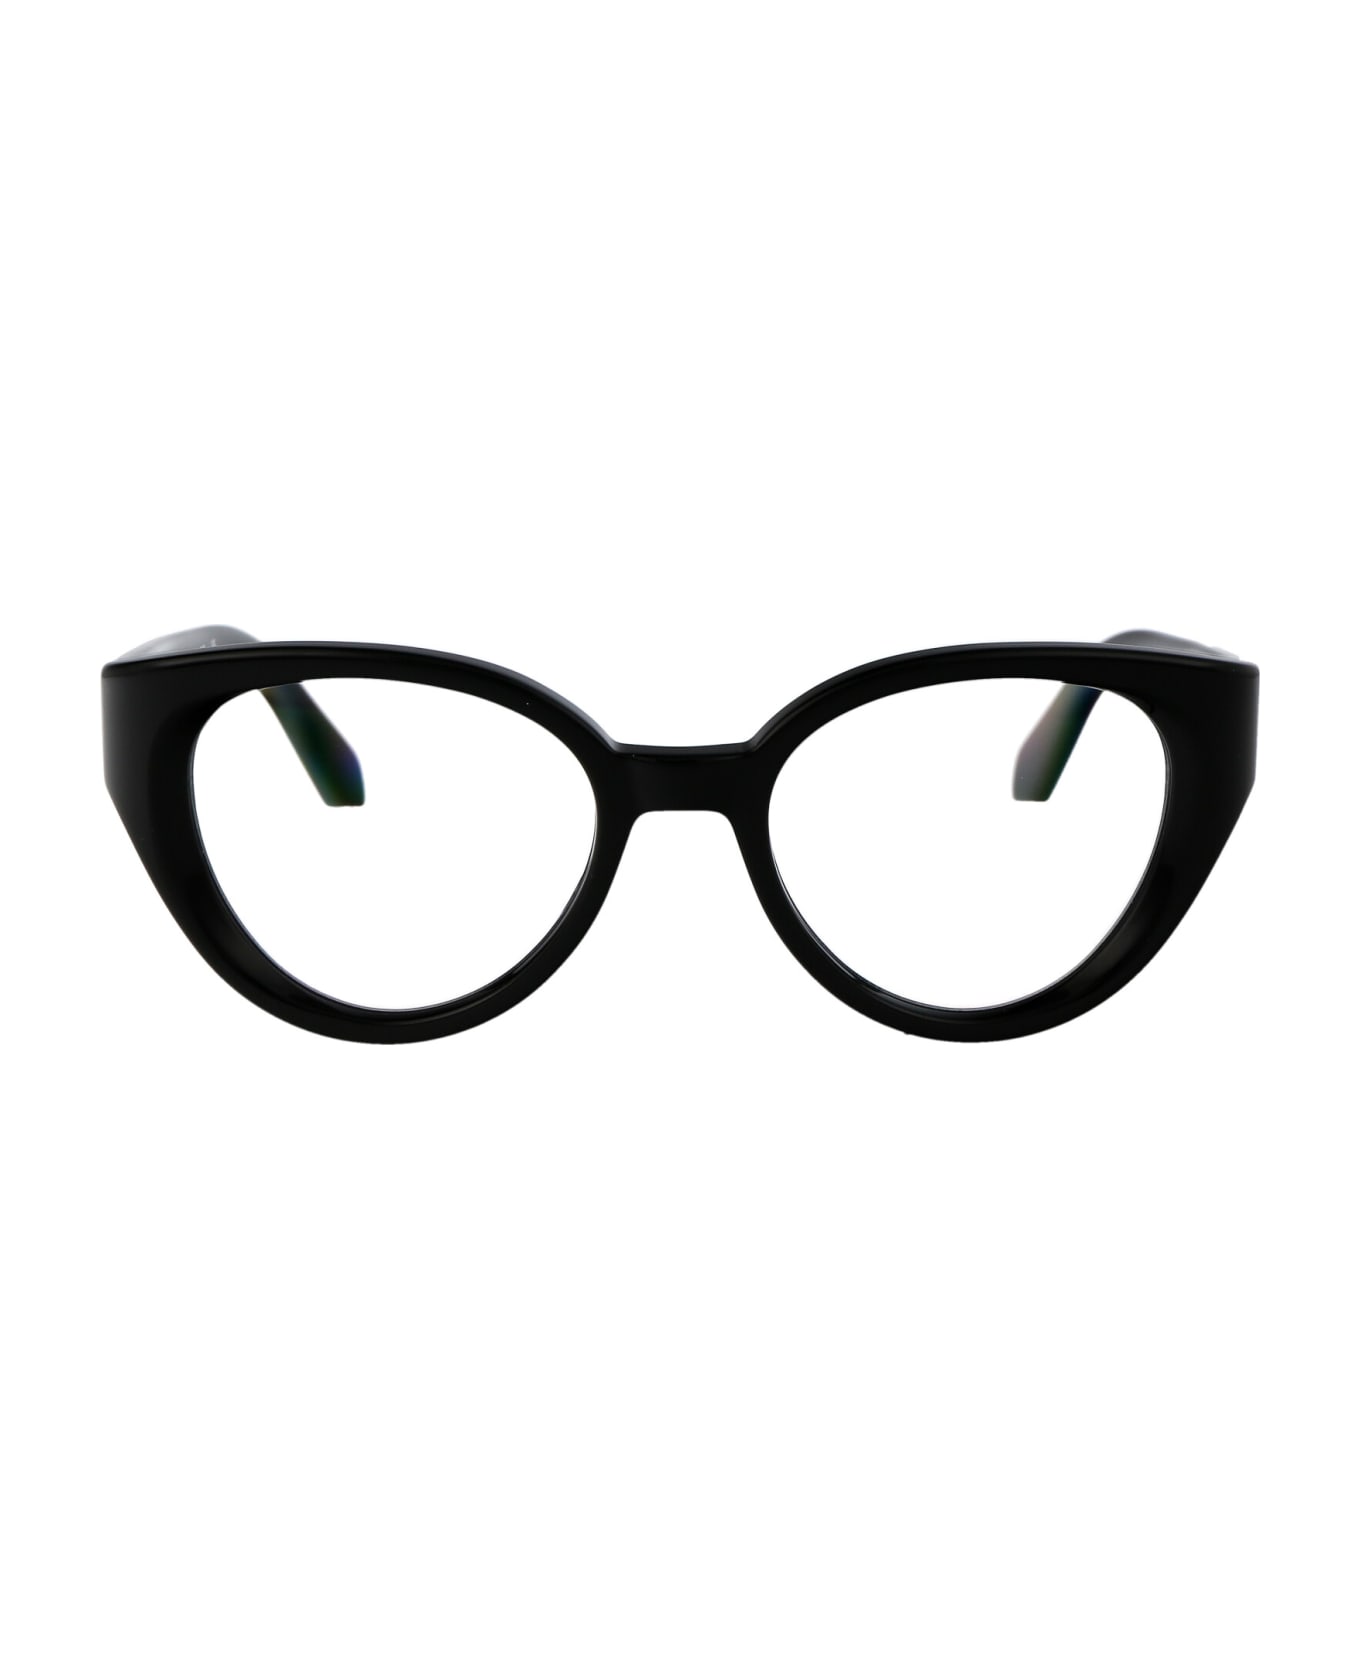 Off-White Optical Style 62 Glasses - 1000 BLACK アイウェア